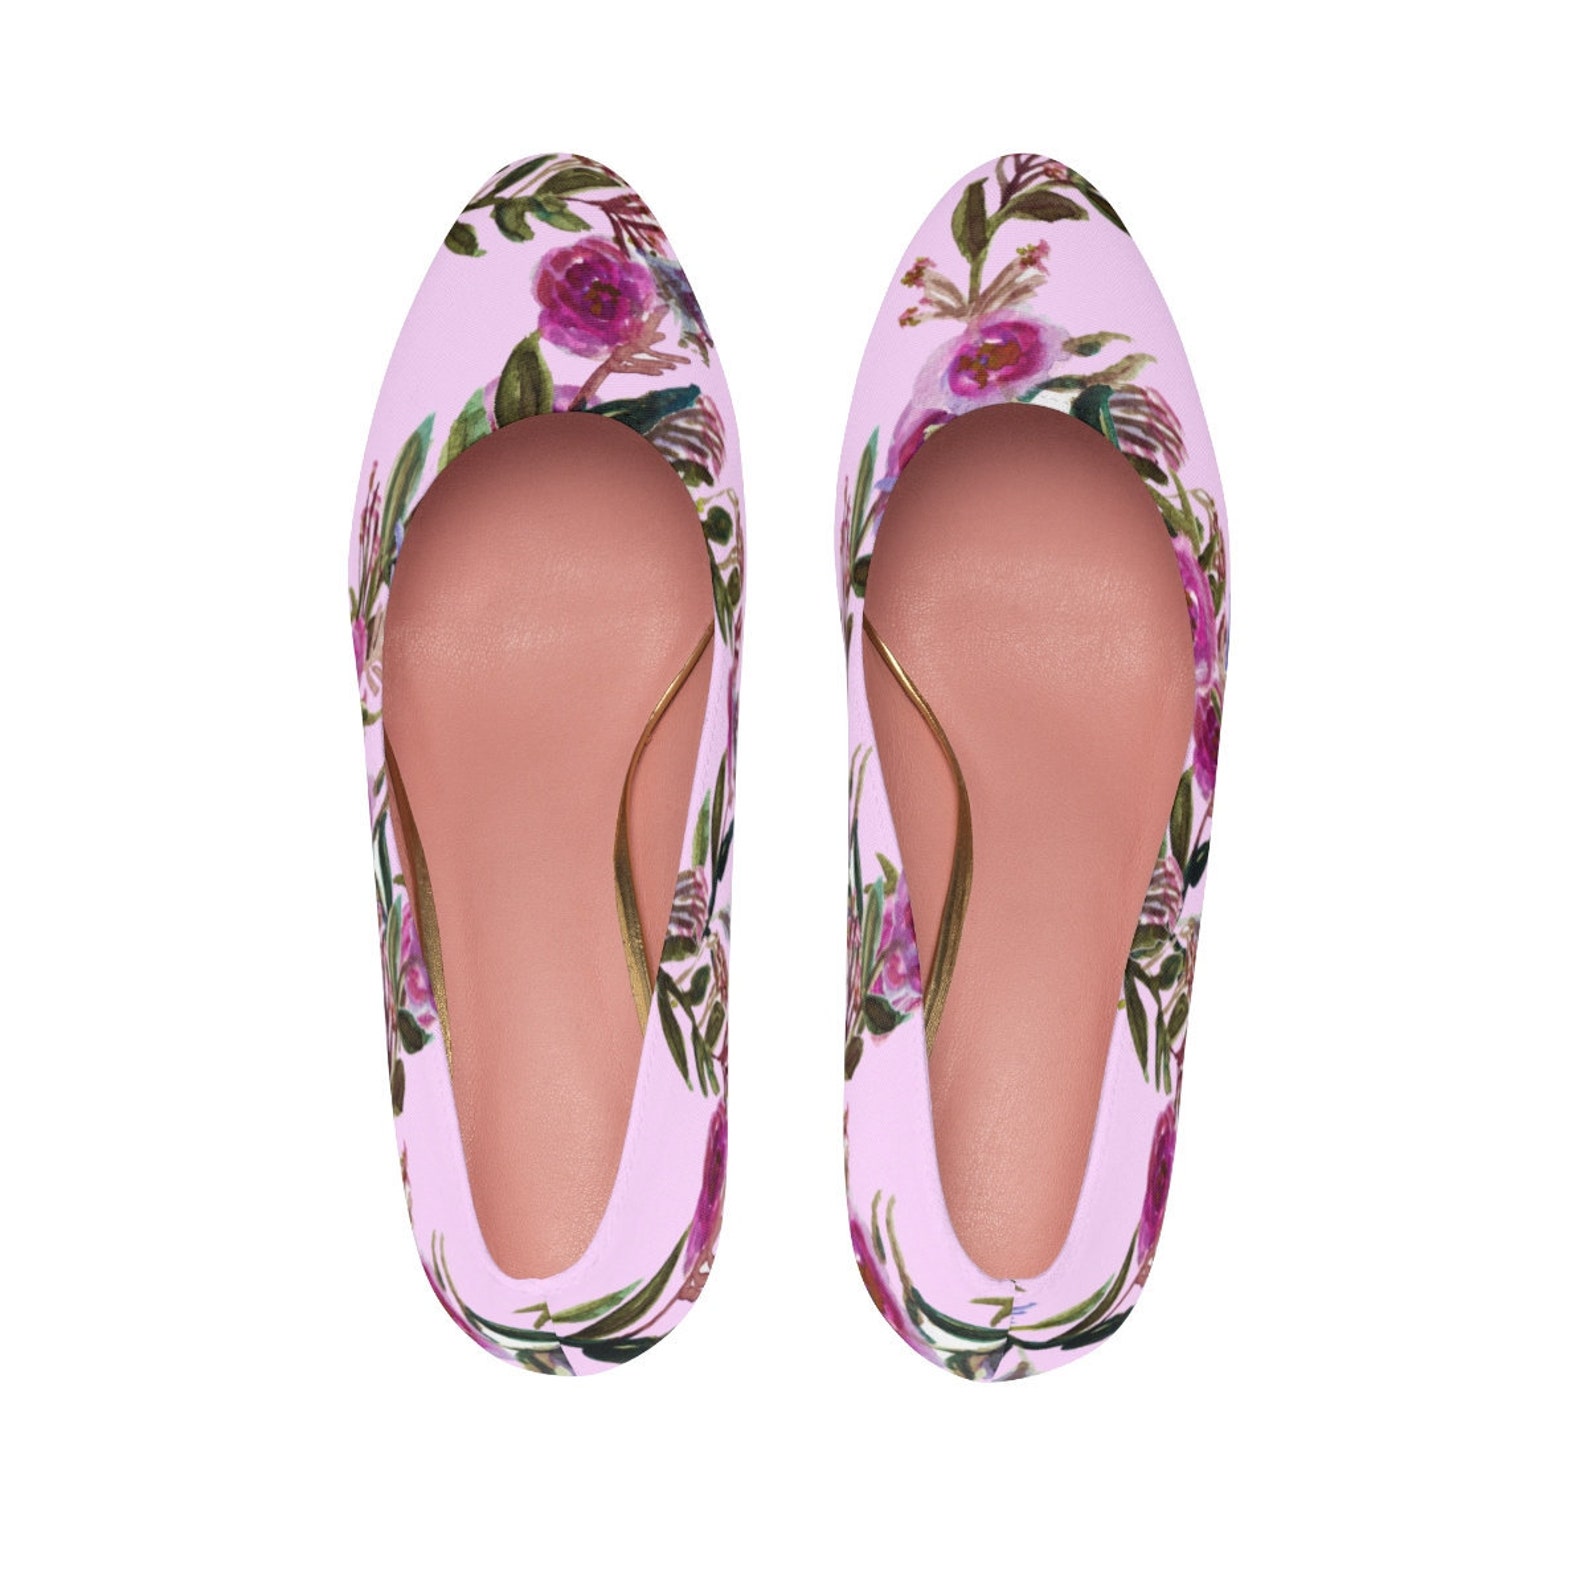 women's floral canvas shoes